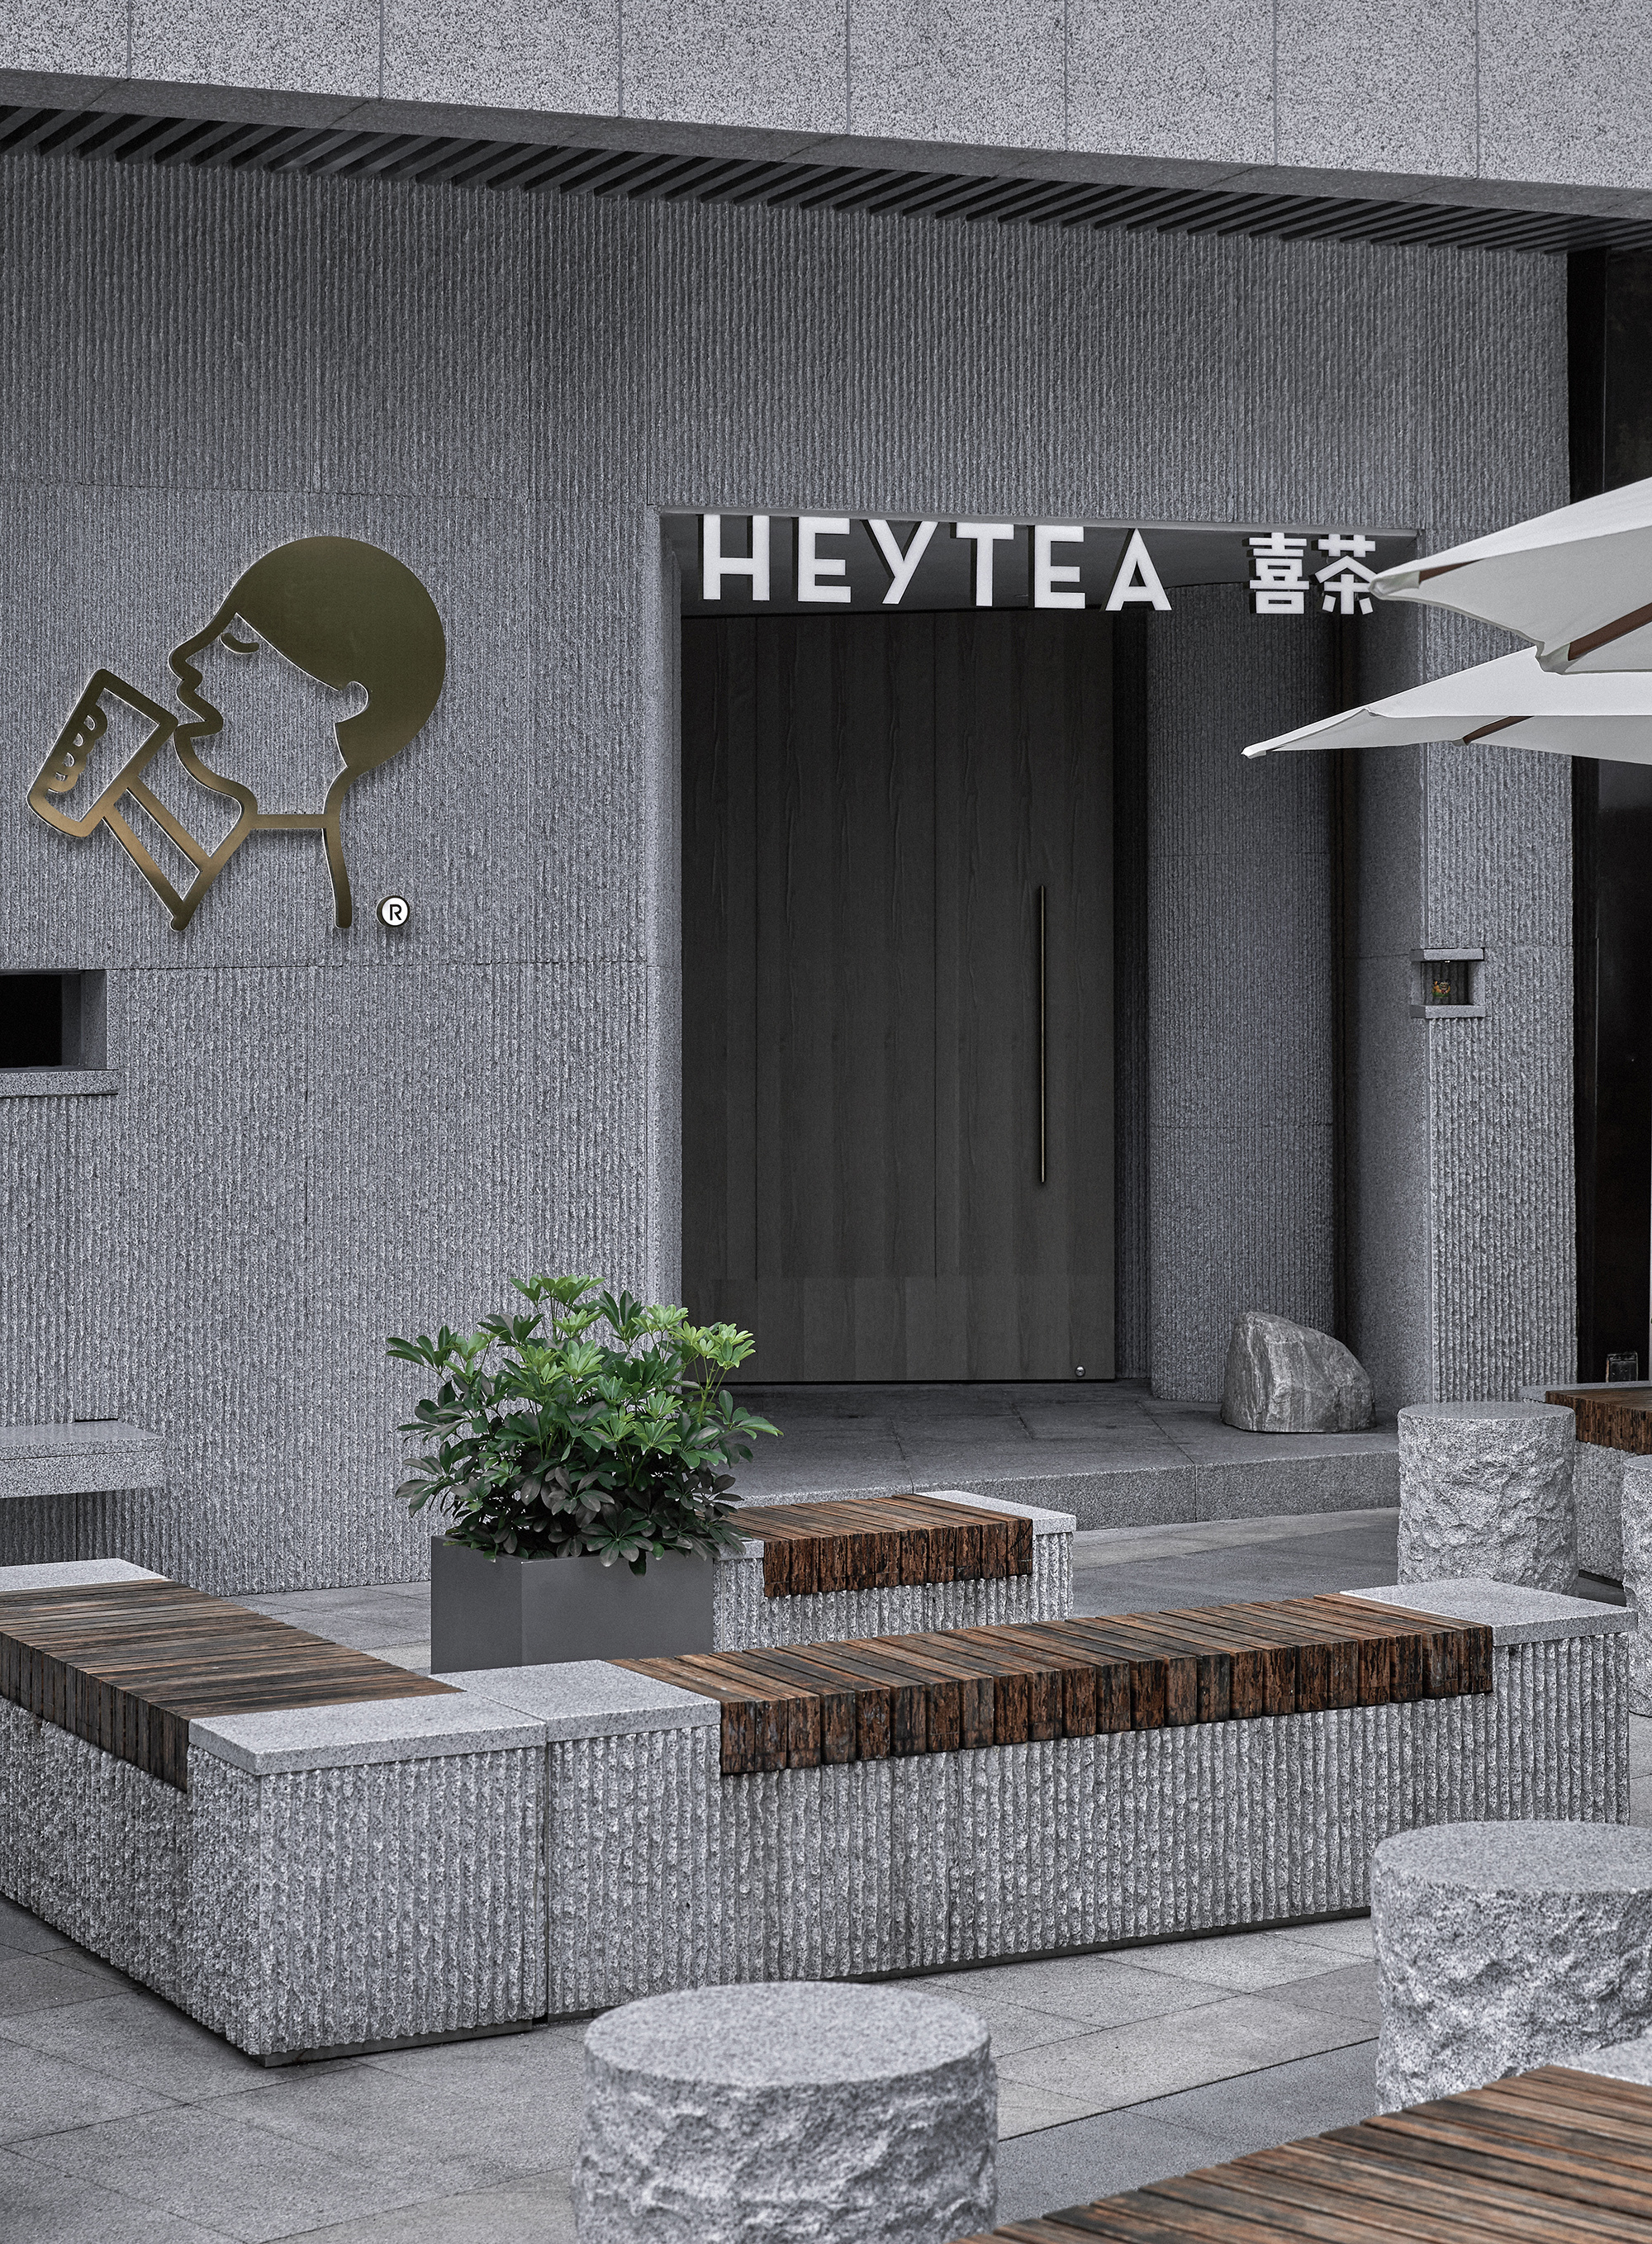 HEYTEA at Xiamen Paragon Center